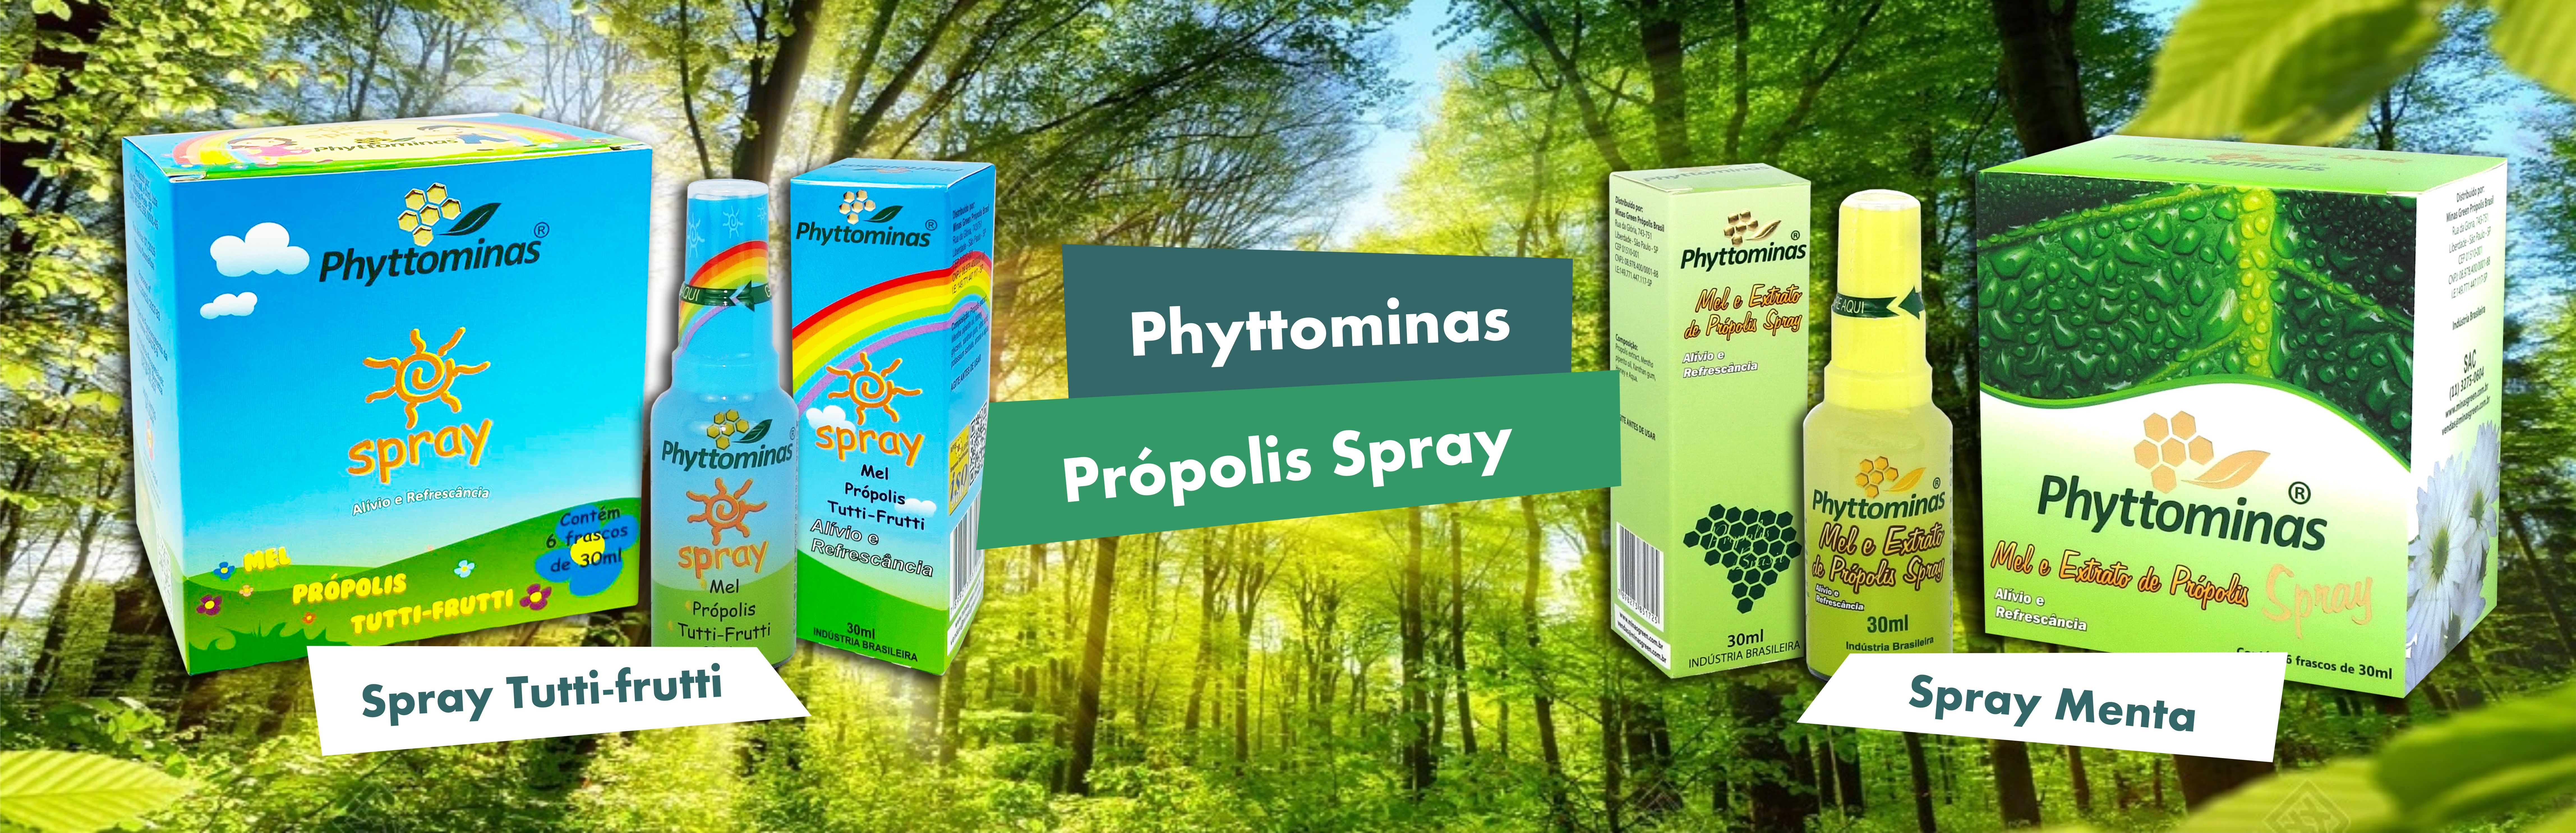 Phyttominas Propólis Spray